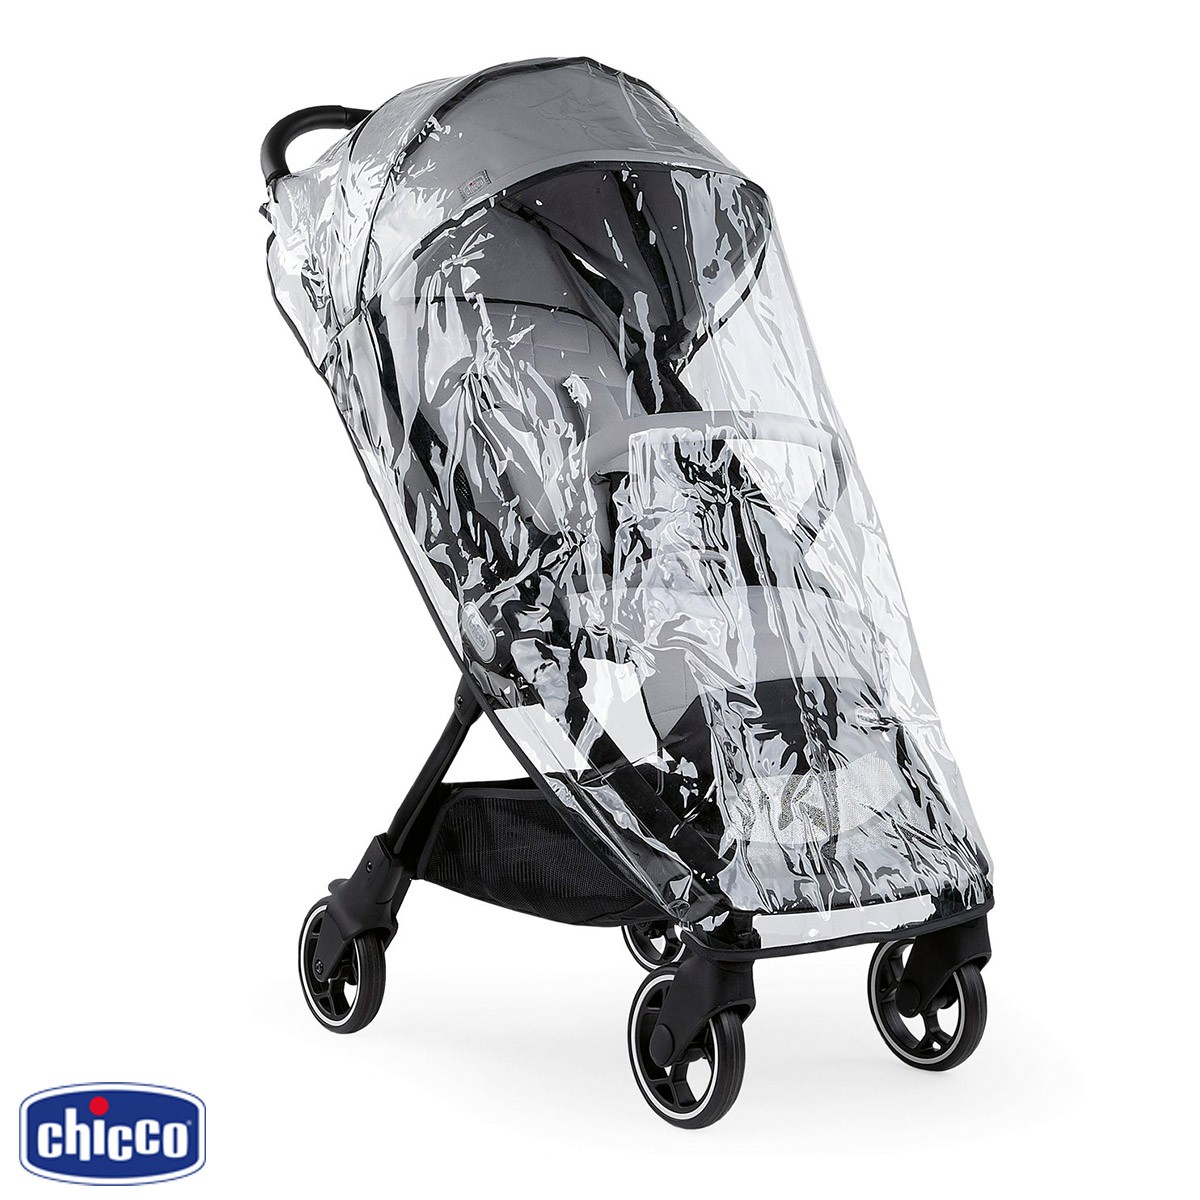 Premium Baby Company - Cochecito ultraliviano y compacto Chicco We para  viajar en Avión